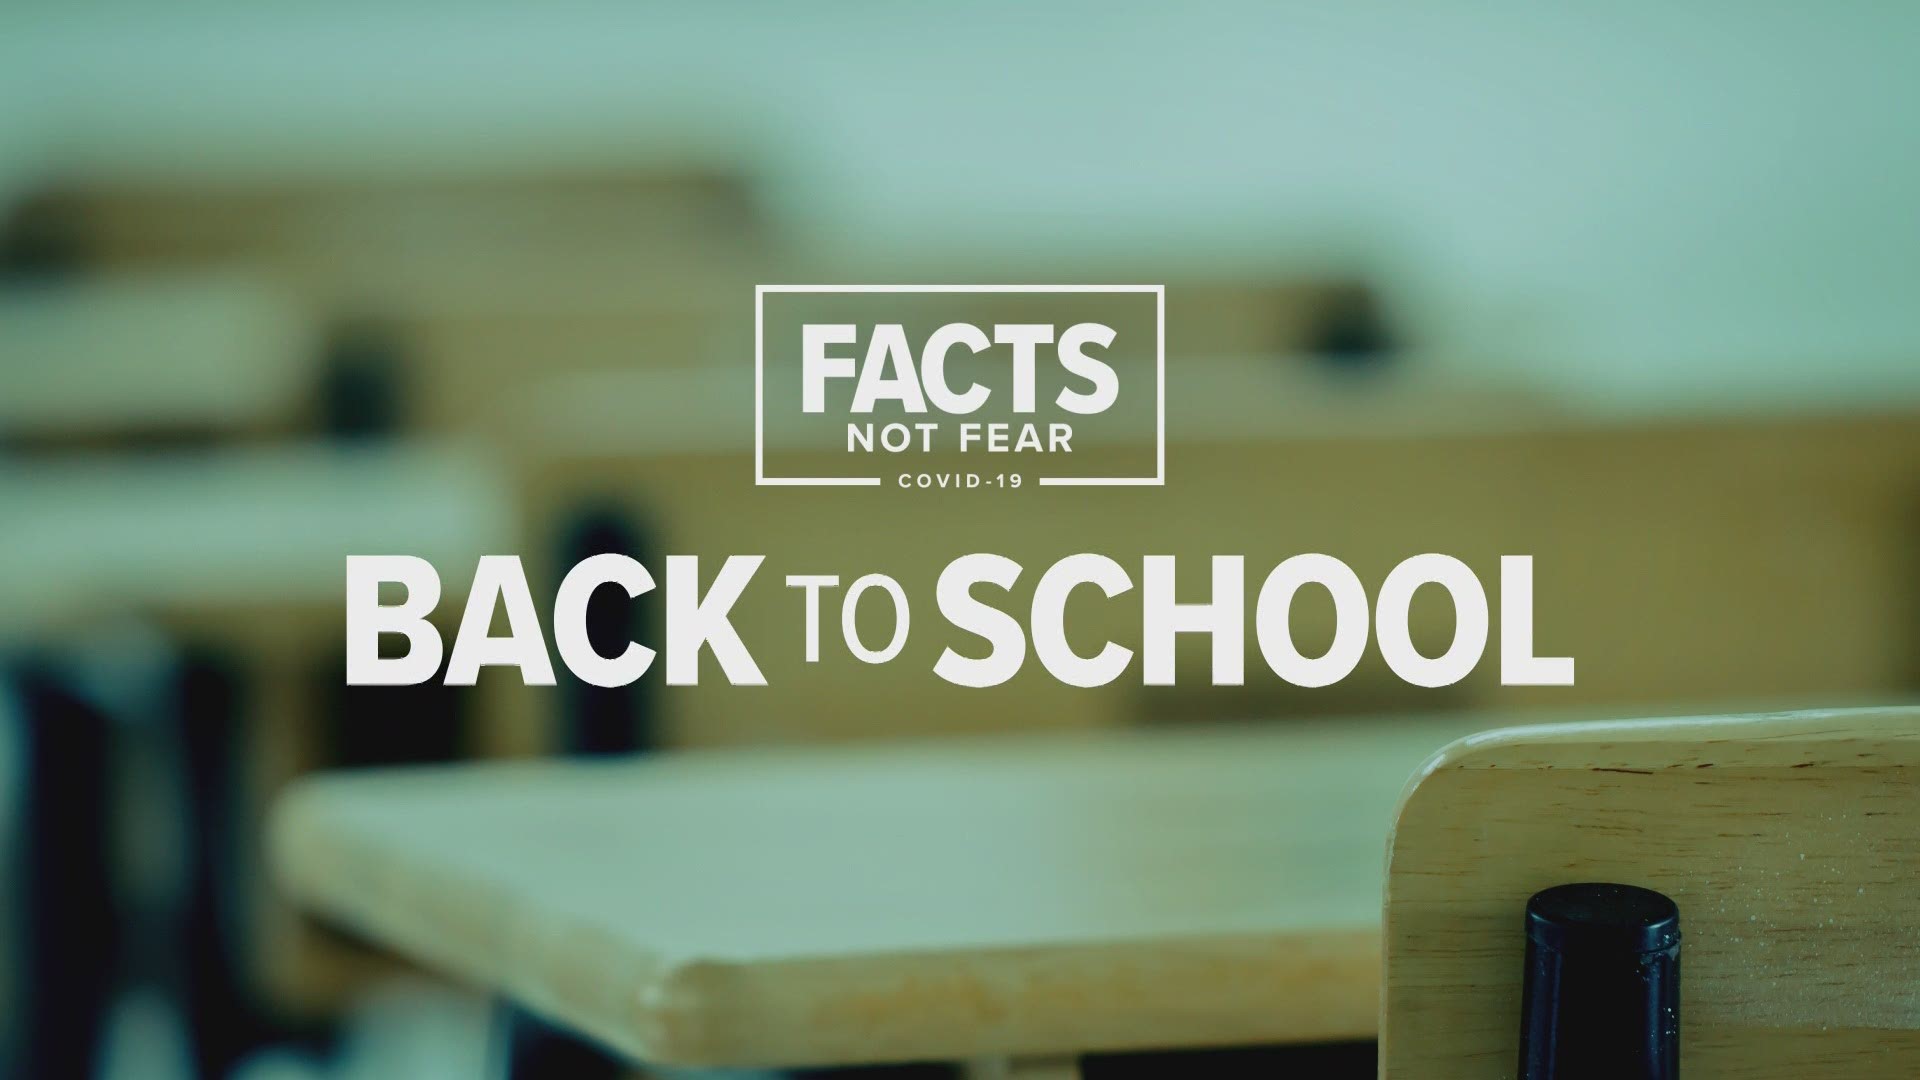 Back to school – Rockford Public Schools